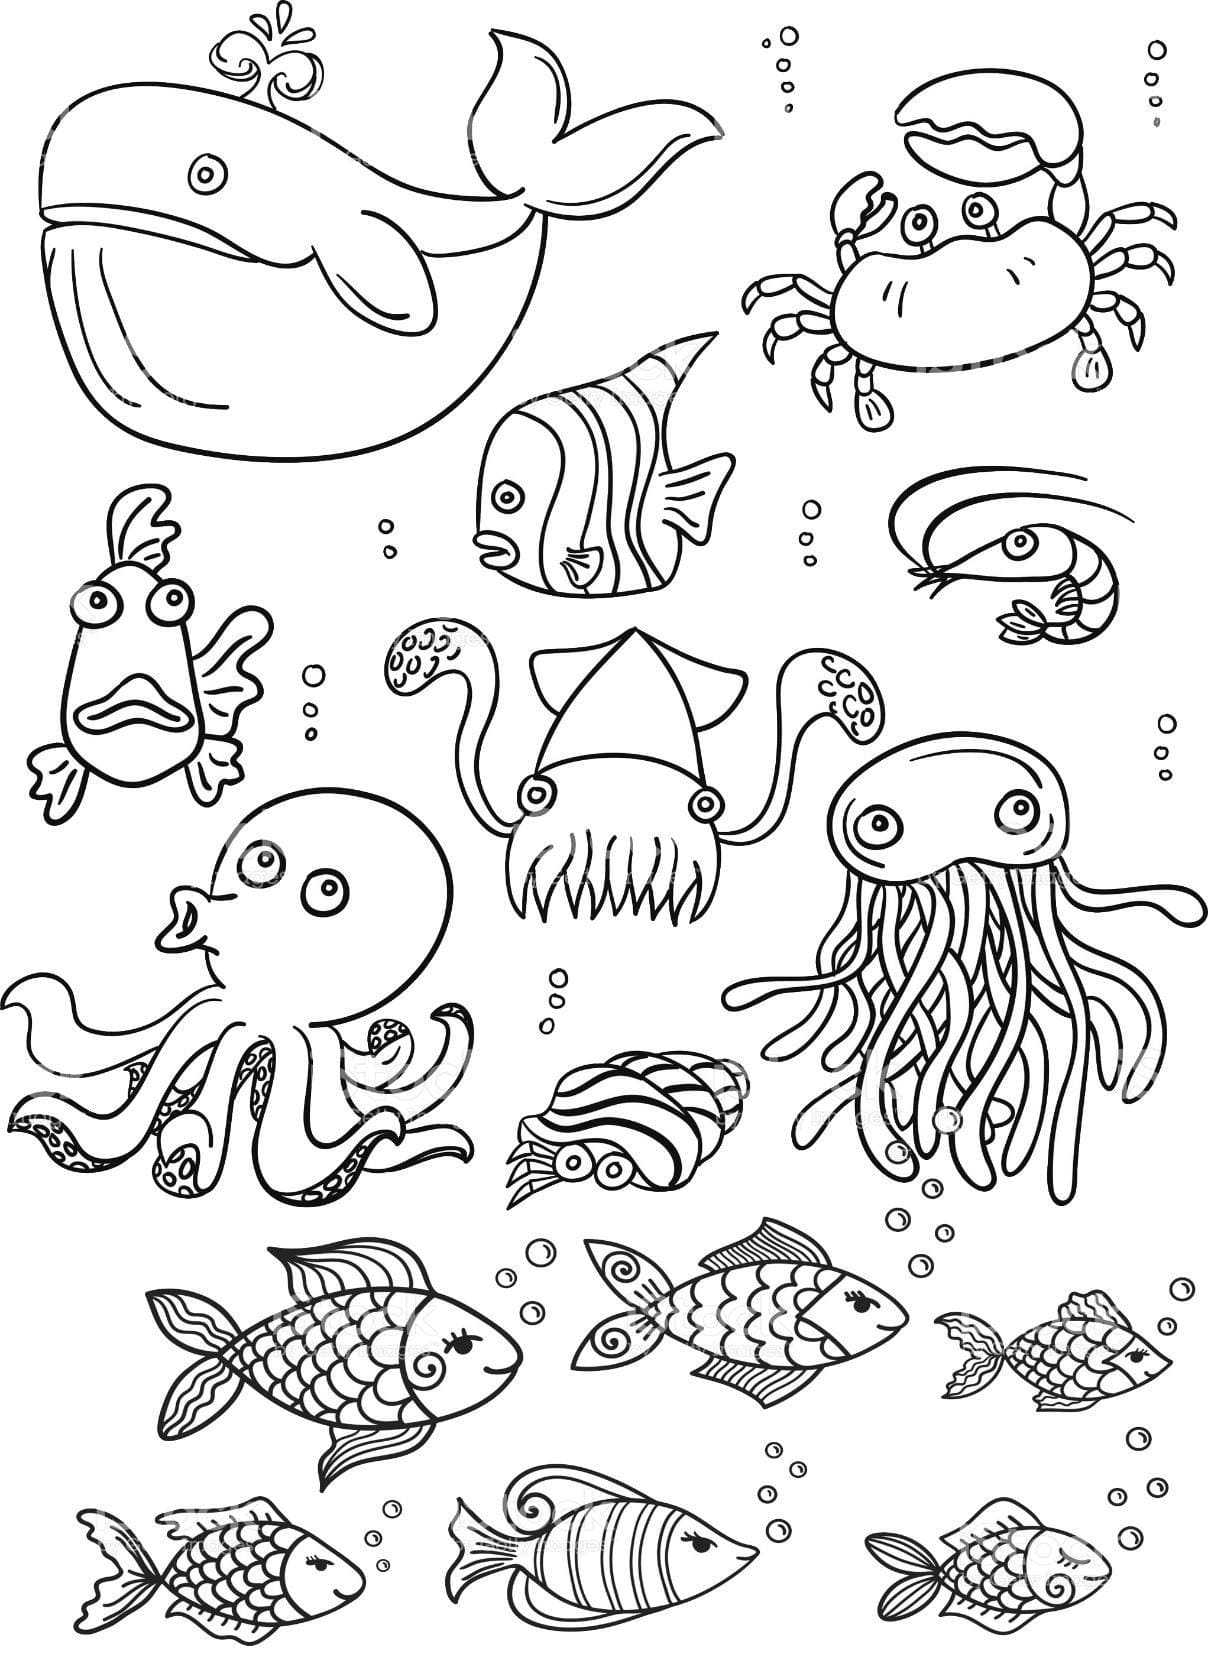 Dibujos de Animales Marinos para colorear - 100 imágenes para imprimir